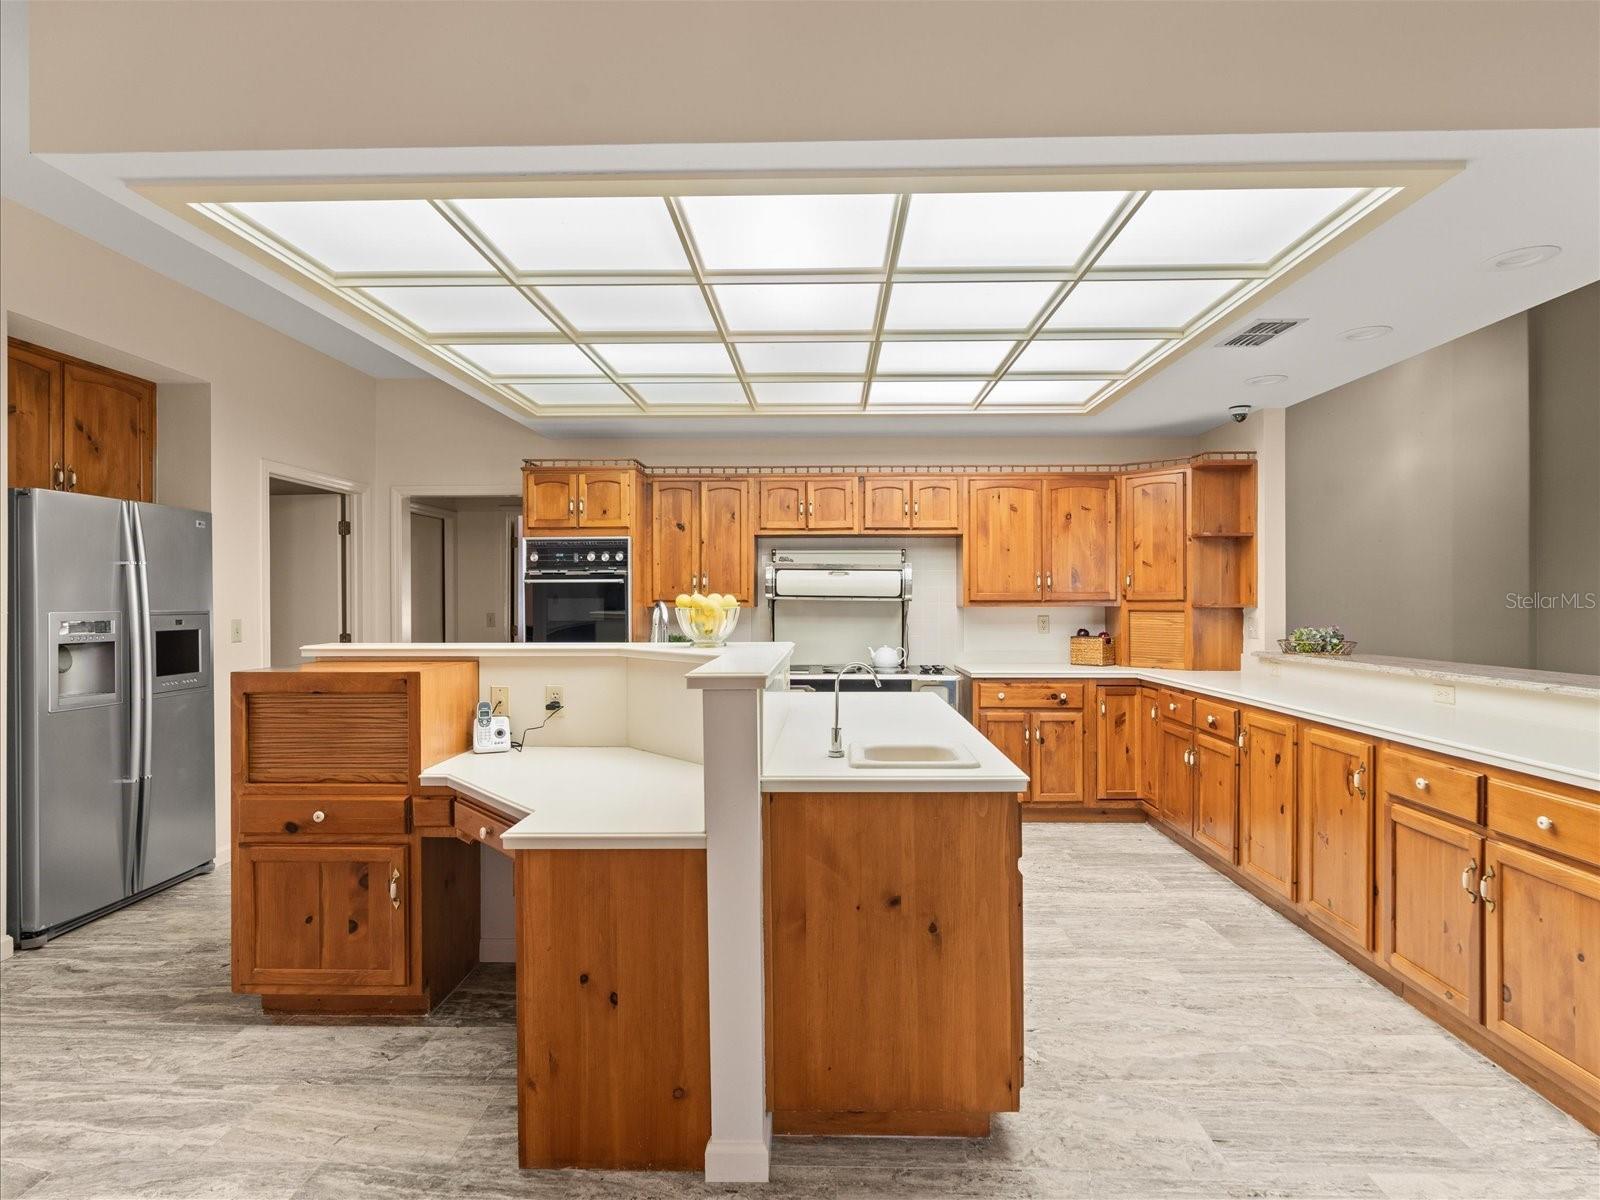 Abundantly large kitchen opens to large family room